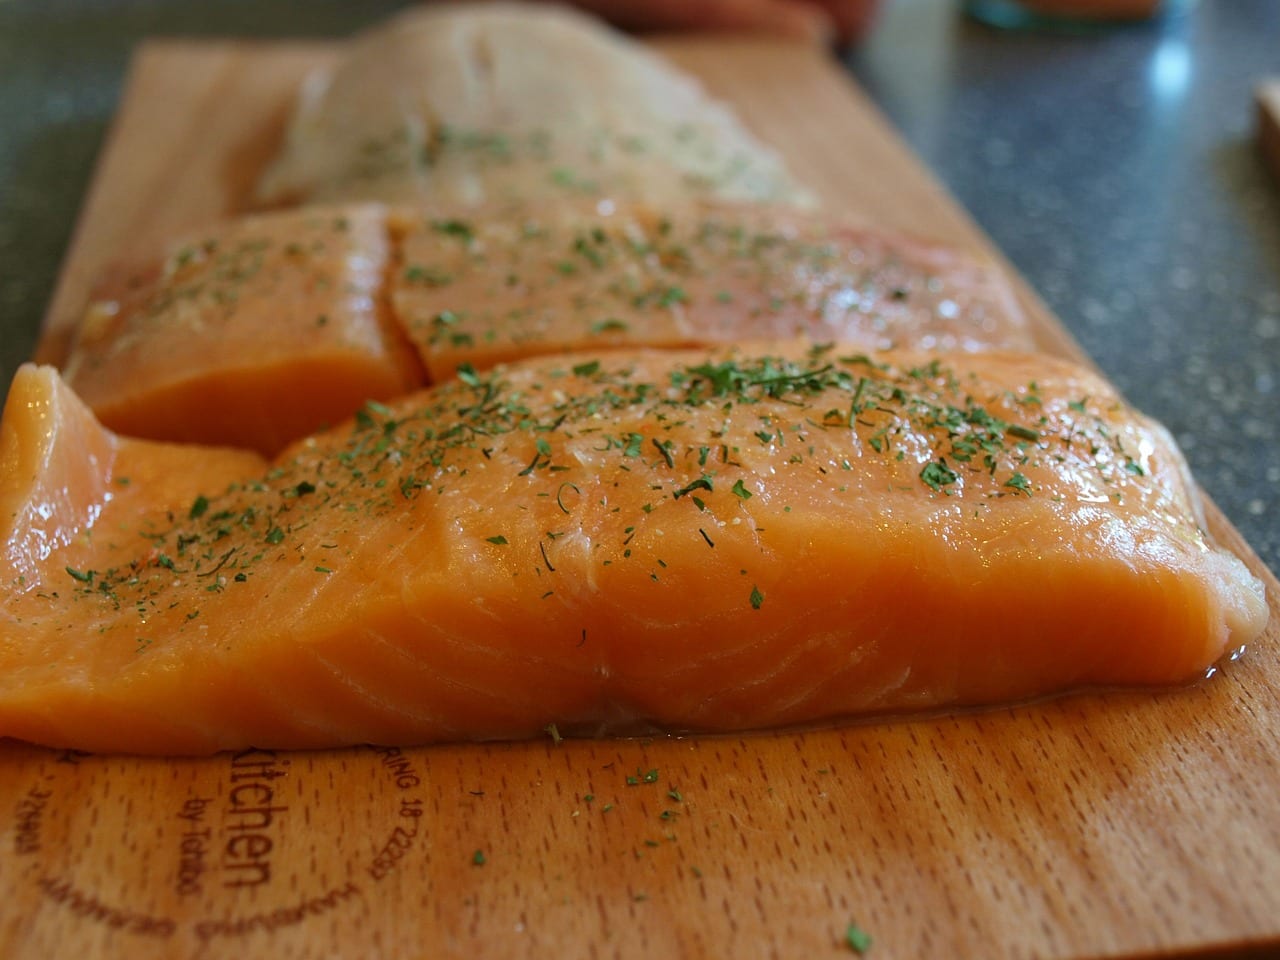 Raw seasoned salmon fillets on wooden cutting board